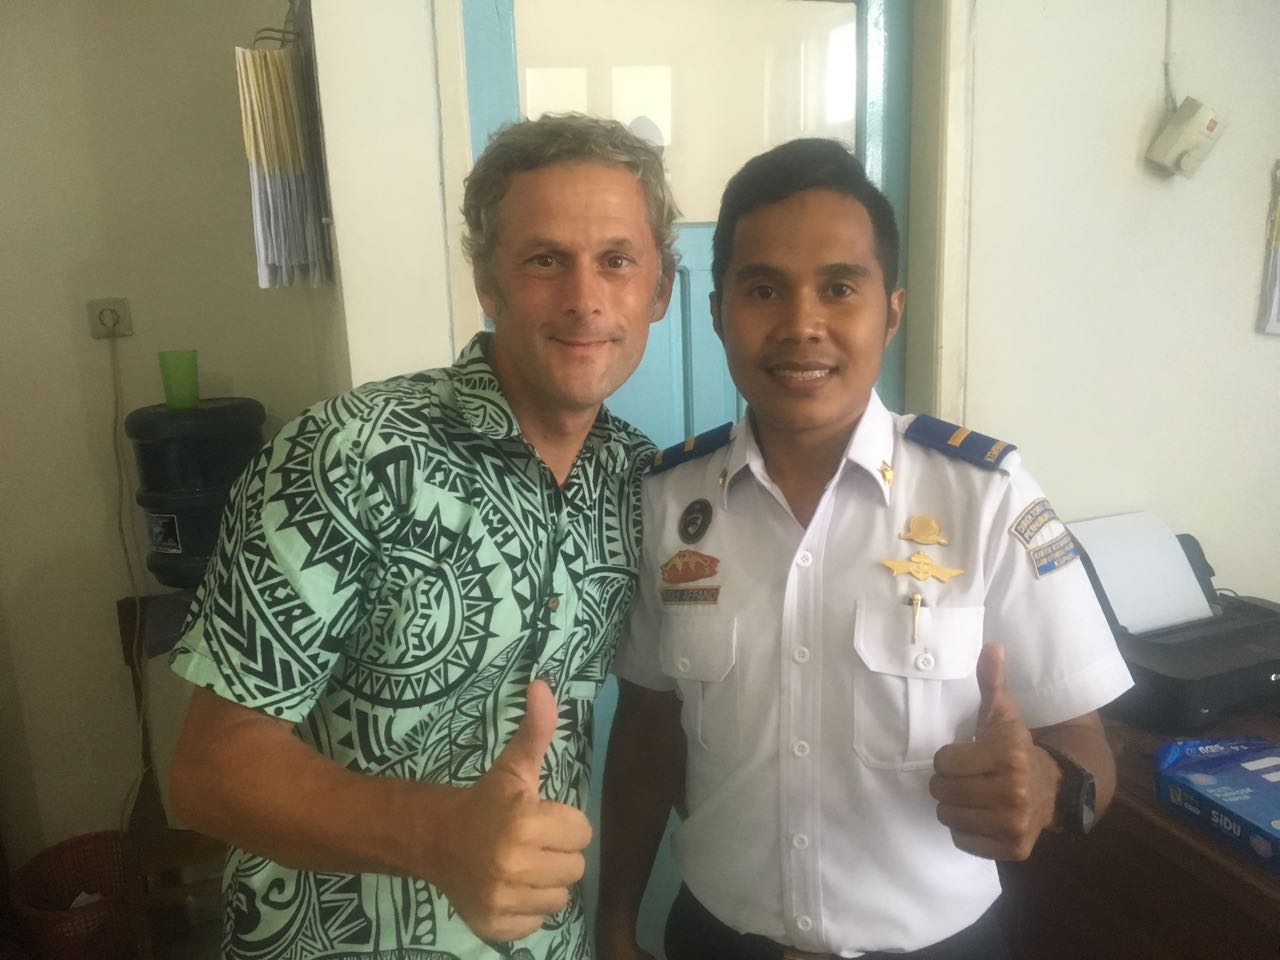 Dieser Officer beim Harbourmaster in Kupang beeindruckt mich mit seinem strahlend weissen Hemd